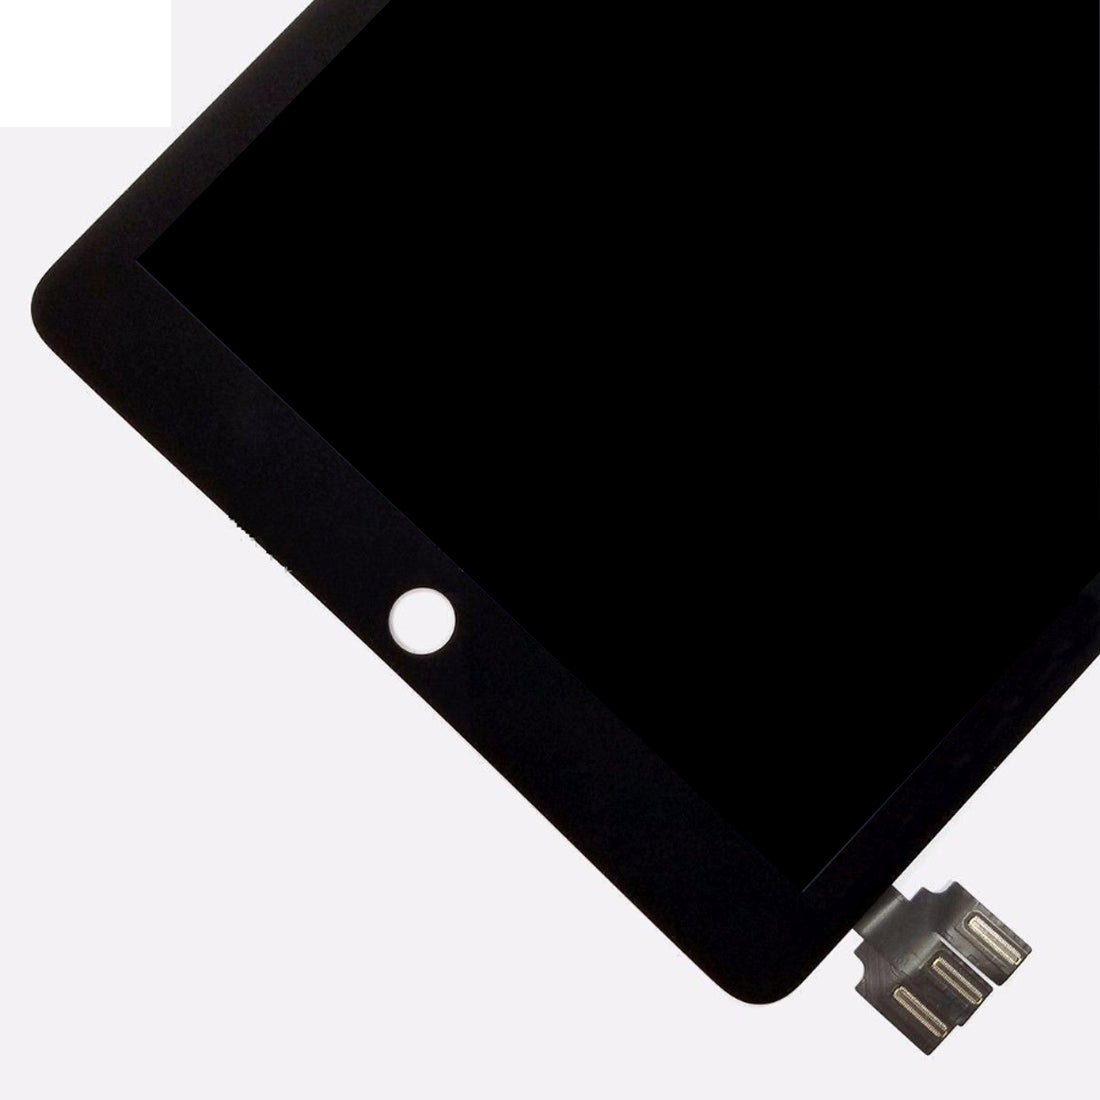 Pantalla LCD + Tactil Digitalizador Apple iPad Pro 9.7 A1673 A1674 A1675 Negro